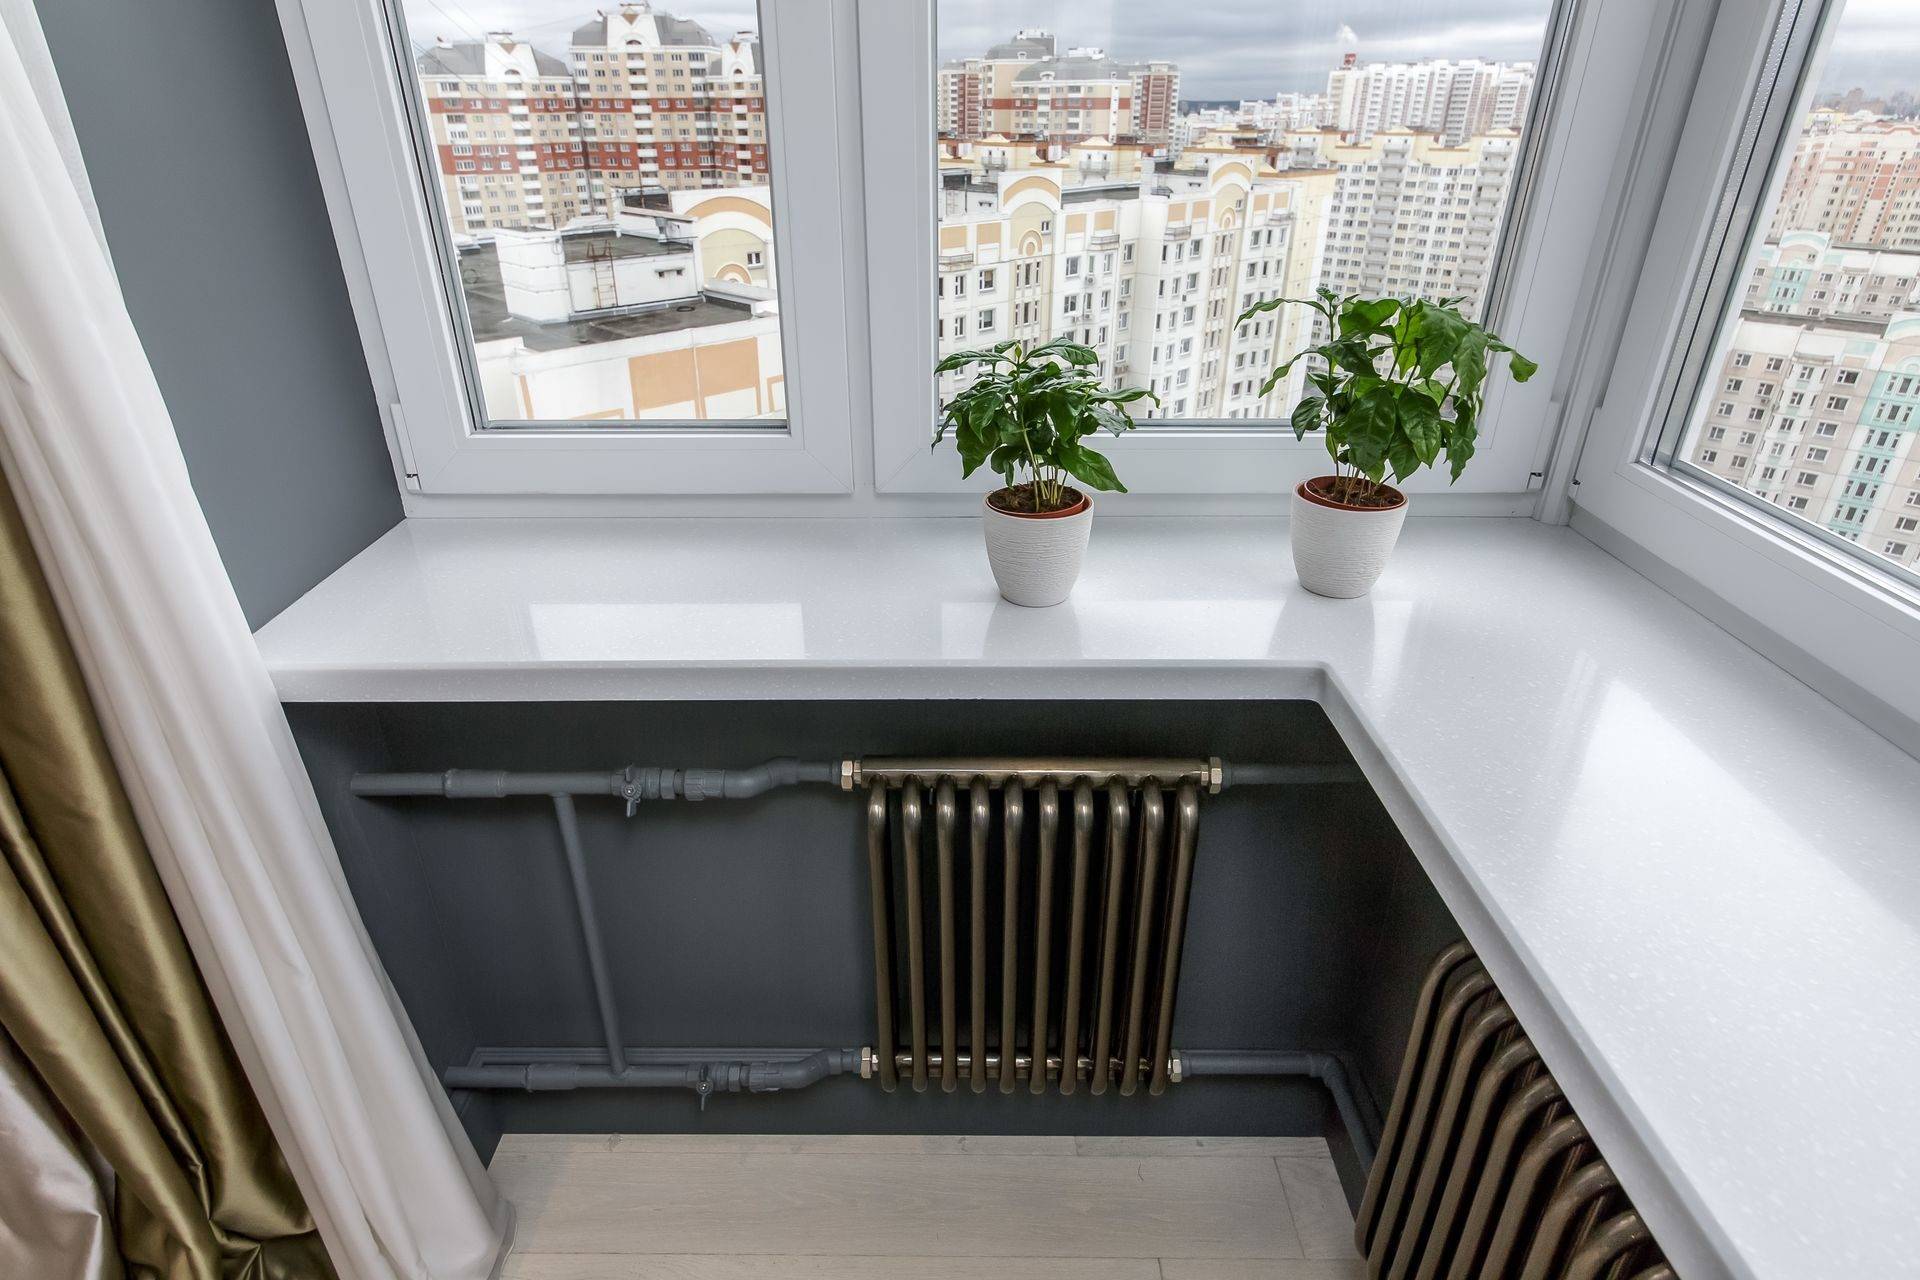 Как обогреть балкон и лоджию зимой: виды обогревателей, методы отопления